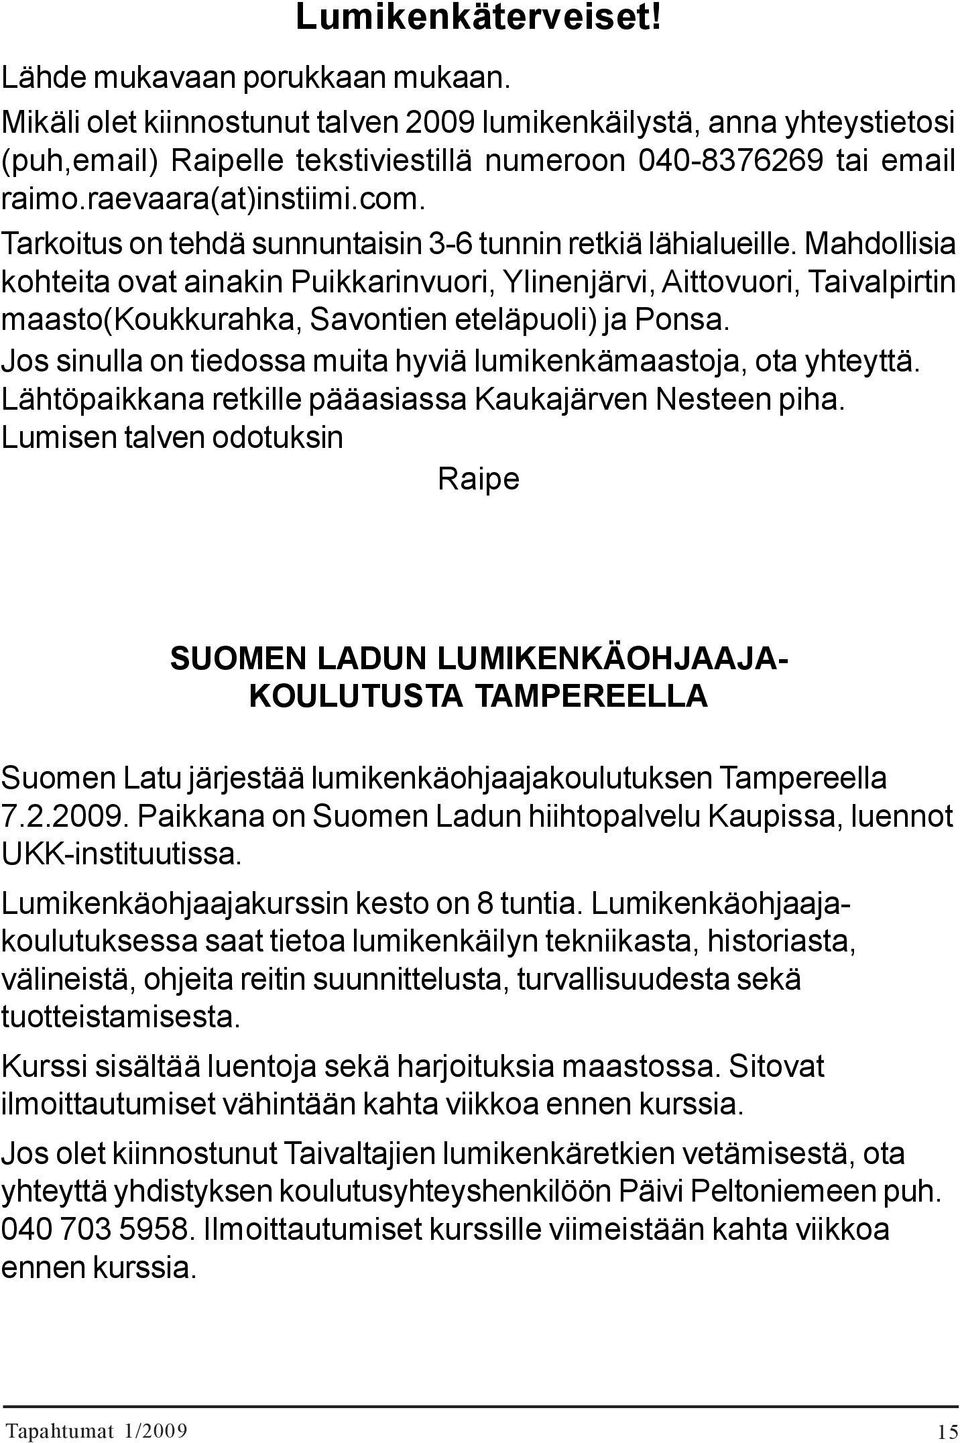 raevaara(at)instiimi.com. TAKK ravintola RATAMO, osoite Tampereen valtatie 15. Päätösillallinen Tarkoitus on tehdä tarkoitettu sunnuntaisin kiitokseksi 3-6 talkootehtävissä tunnin retkiä lähialueille.